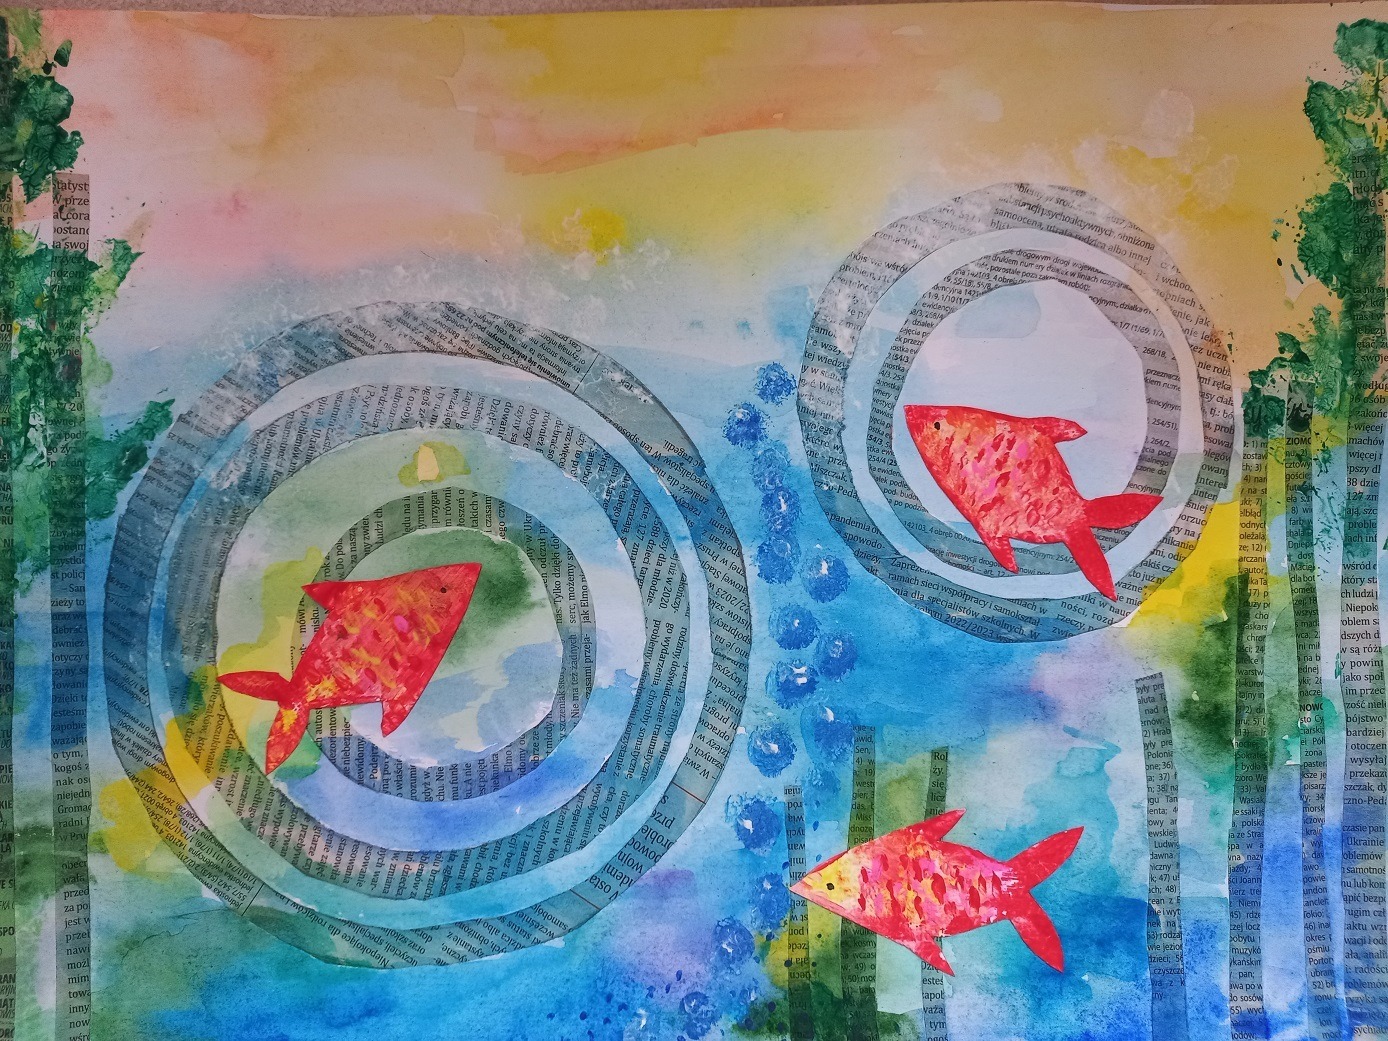 Praca malarska przedstawia trzy czerwone rybki w kręgach i wodorostach wykonanych z gazety na niebiesko-błękitnym tle